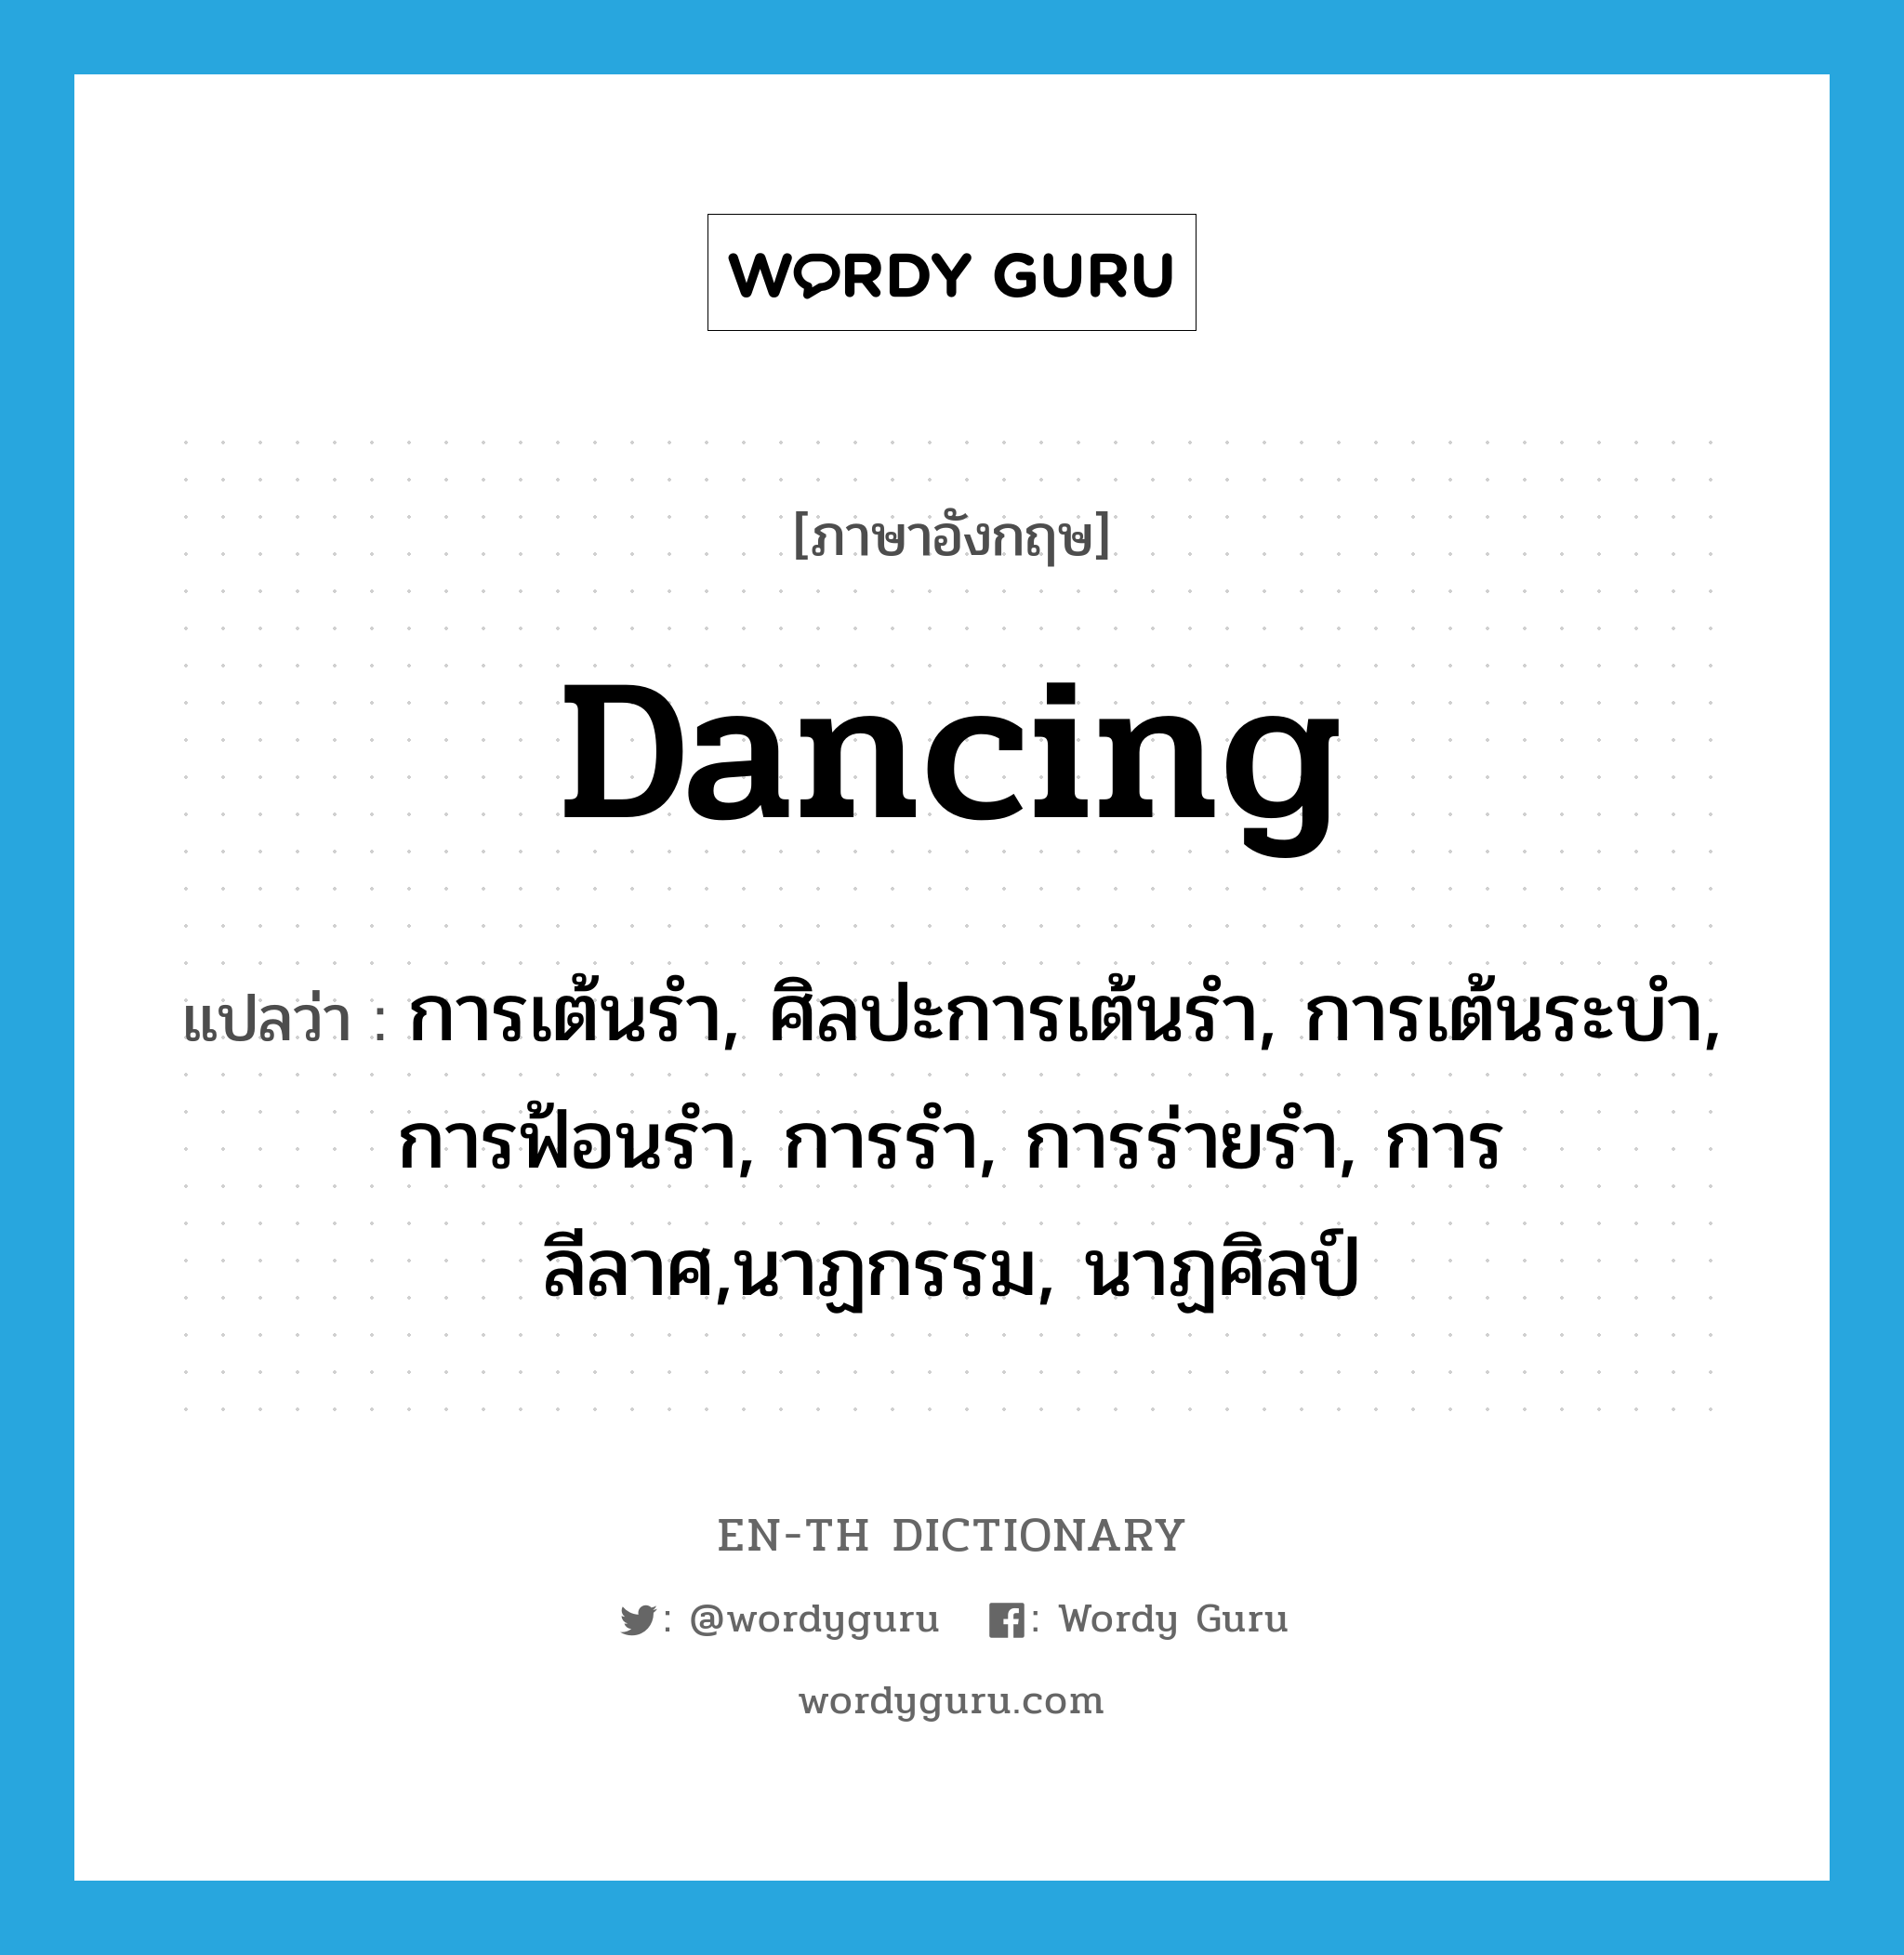 dancing แปลว่า?, คำศัพท์ภาษาอังกฤษ dancing แปลว่า การเต้นรำ, ศิลปะการเต้นรำ, การเต้นระบำ, การฟ้อนรำ, การรำ, การร่ายรำ, การลีลาศ,นาฏกรรม, นาฏศิลป์ ประเภท N หมวด N